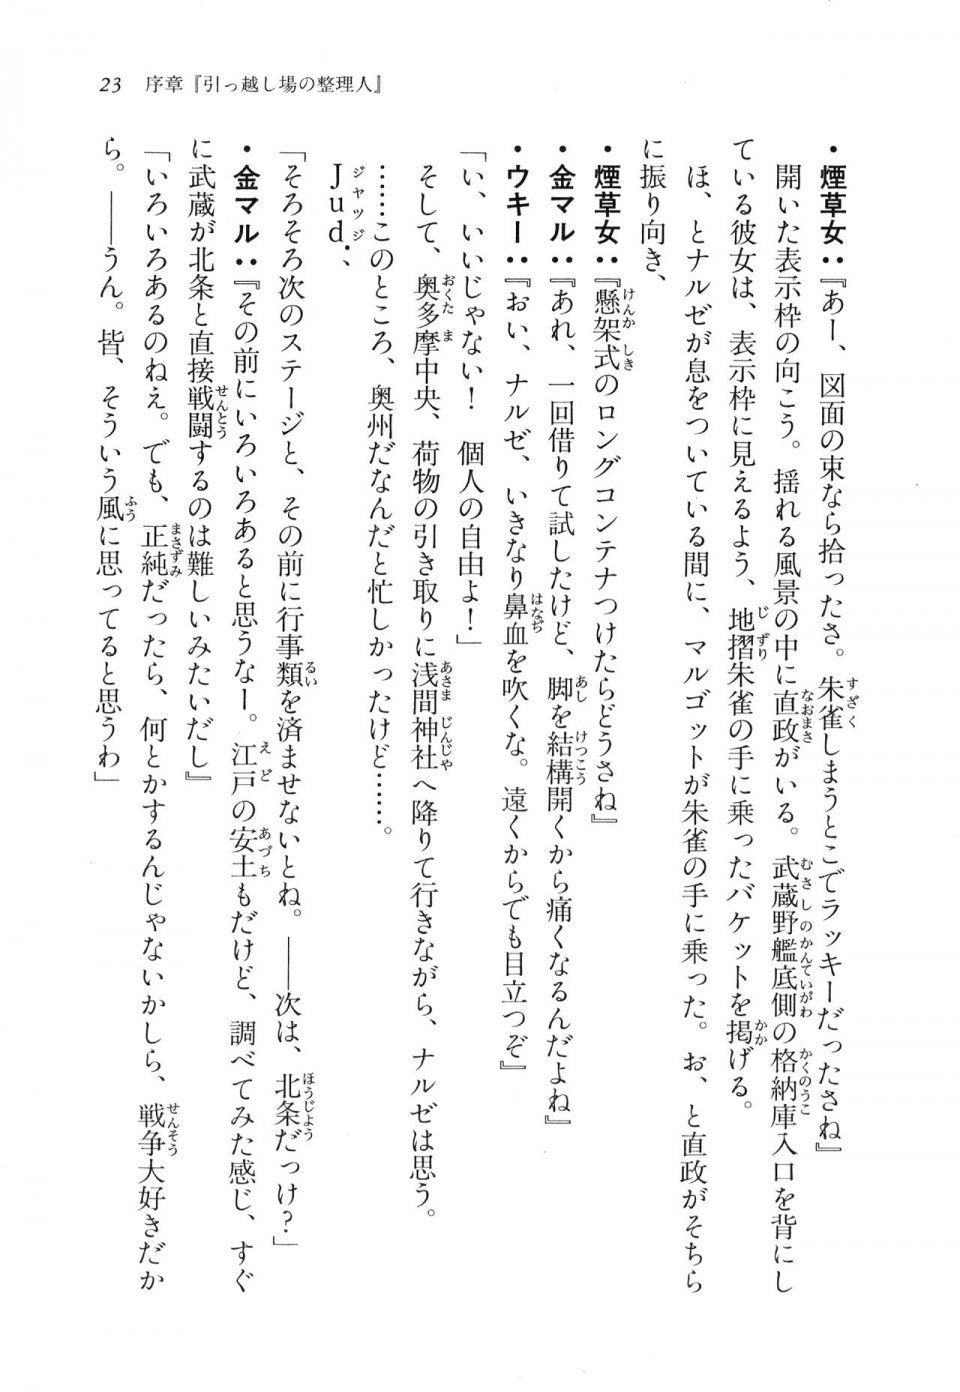 Kyoukai Senjou no Horizon LN Vol 11(5A) - Photo #24